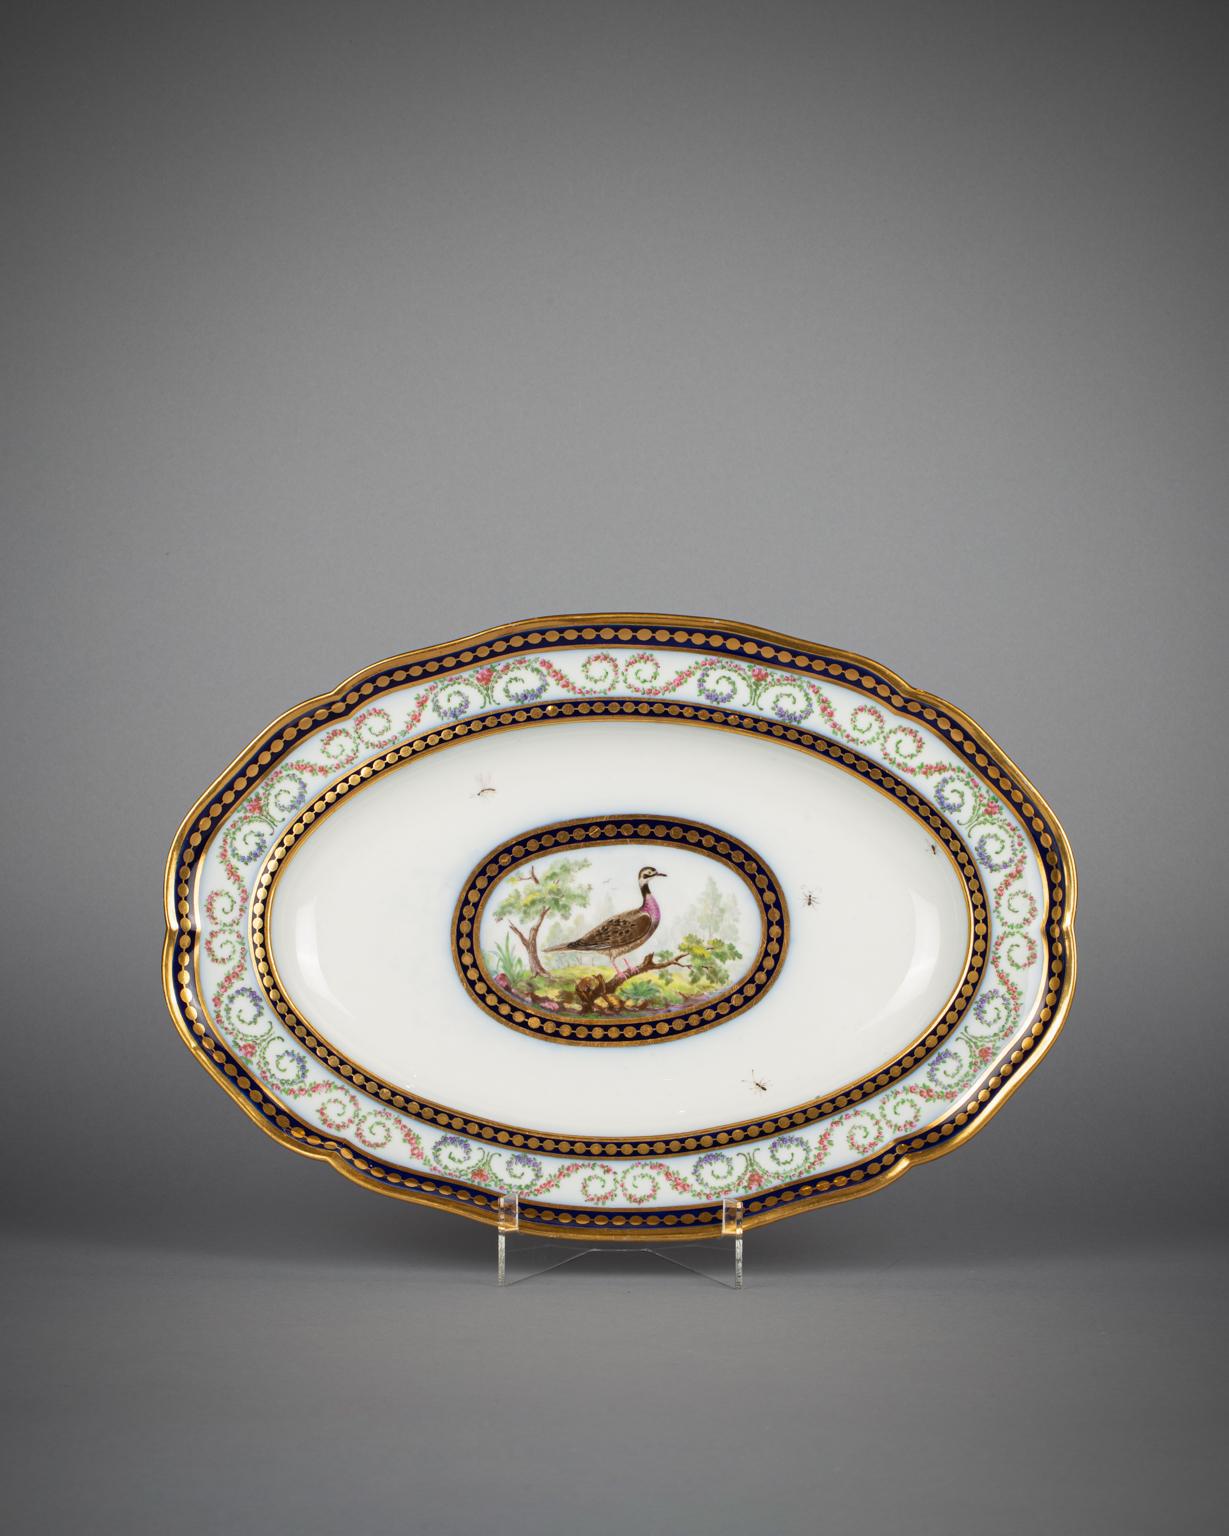 Ce plat provient d'un service de table de Sèvres vendu au banquier néerlandais Jean-Baptiste Vandernyver le 29 novembre 1792. Le plat est marqué peint par Francois Baudoin Pere et doré par Henri-Martin Prevost.